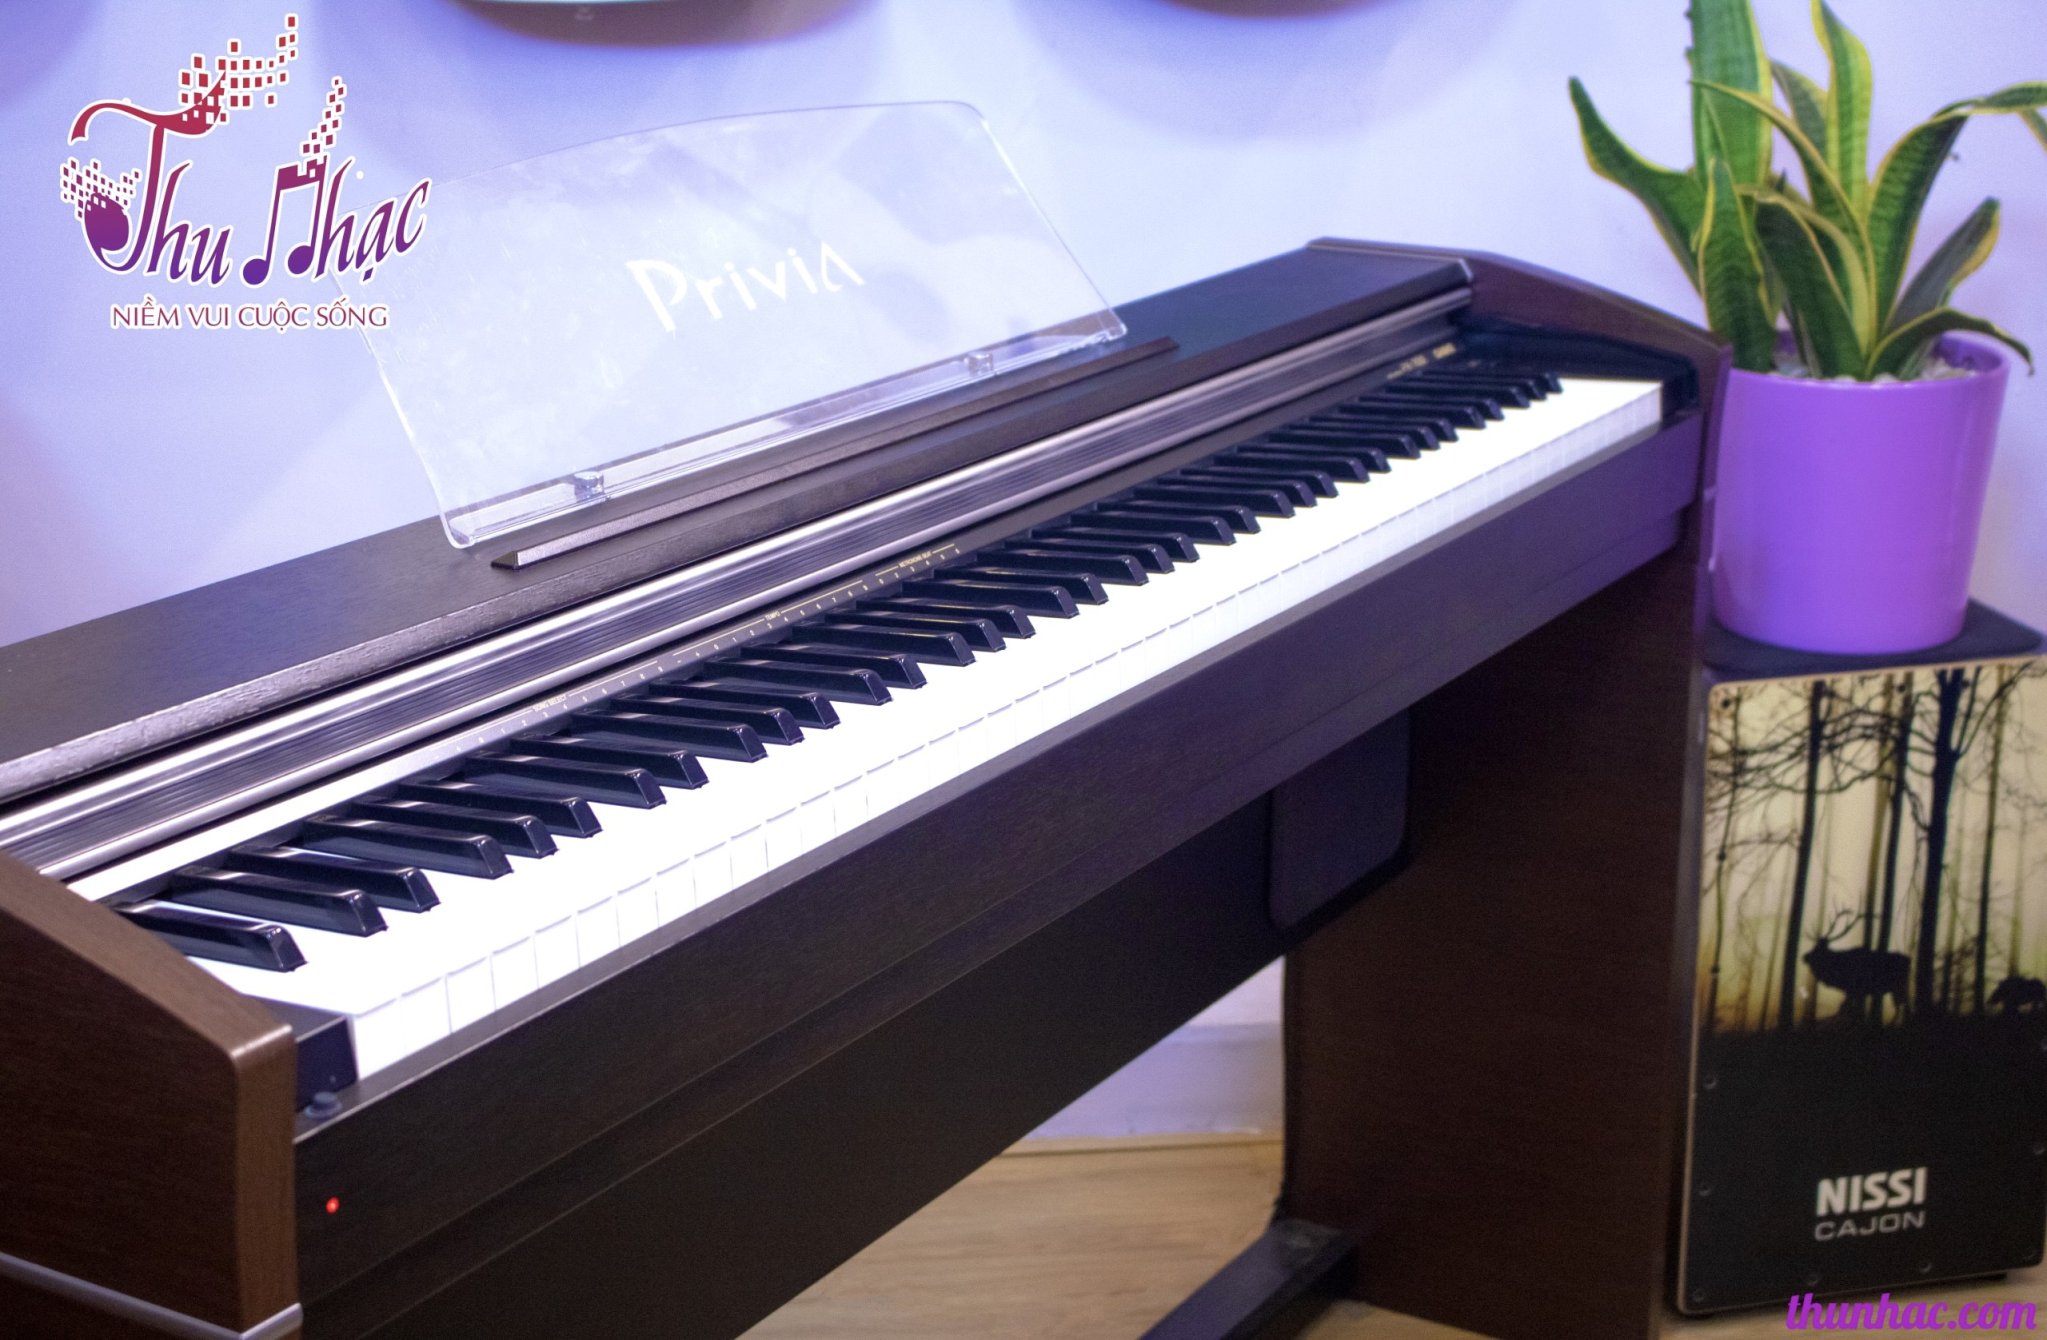 Cửa hàng bán đàn piano cơ, piano điện tại Bình Thạnh mới giá tốt